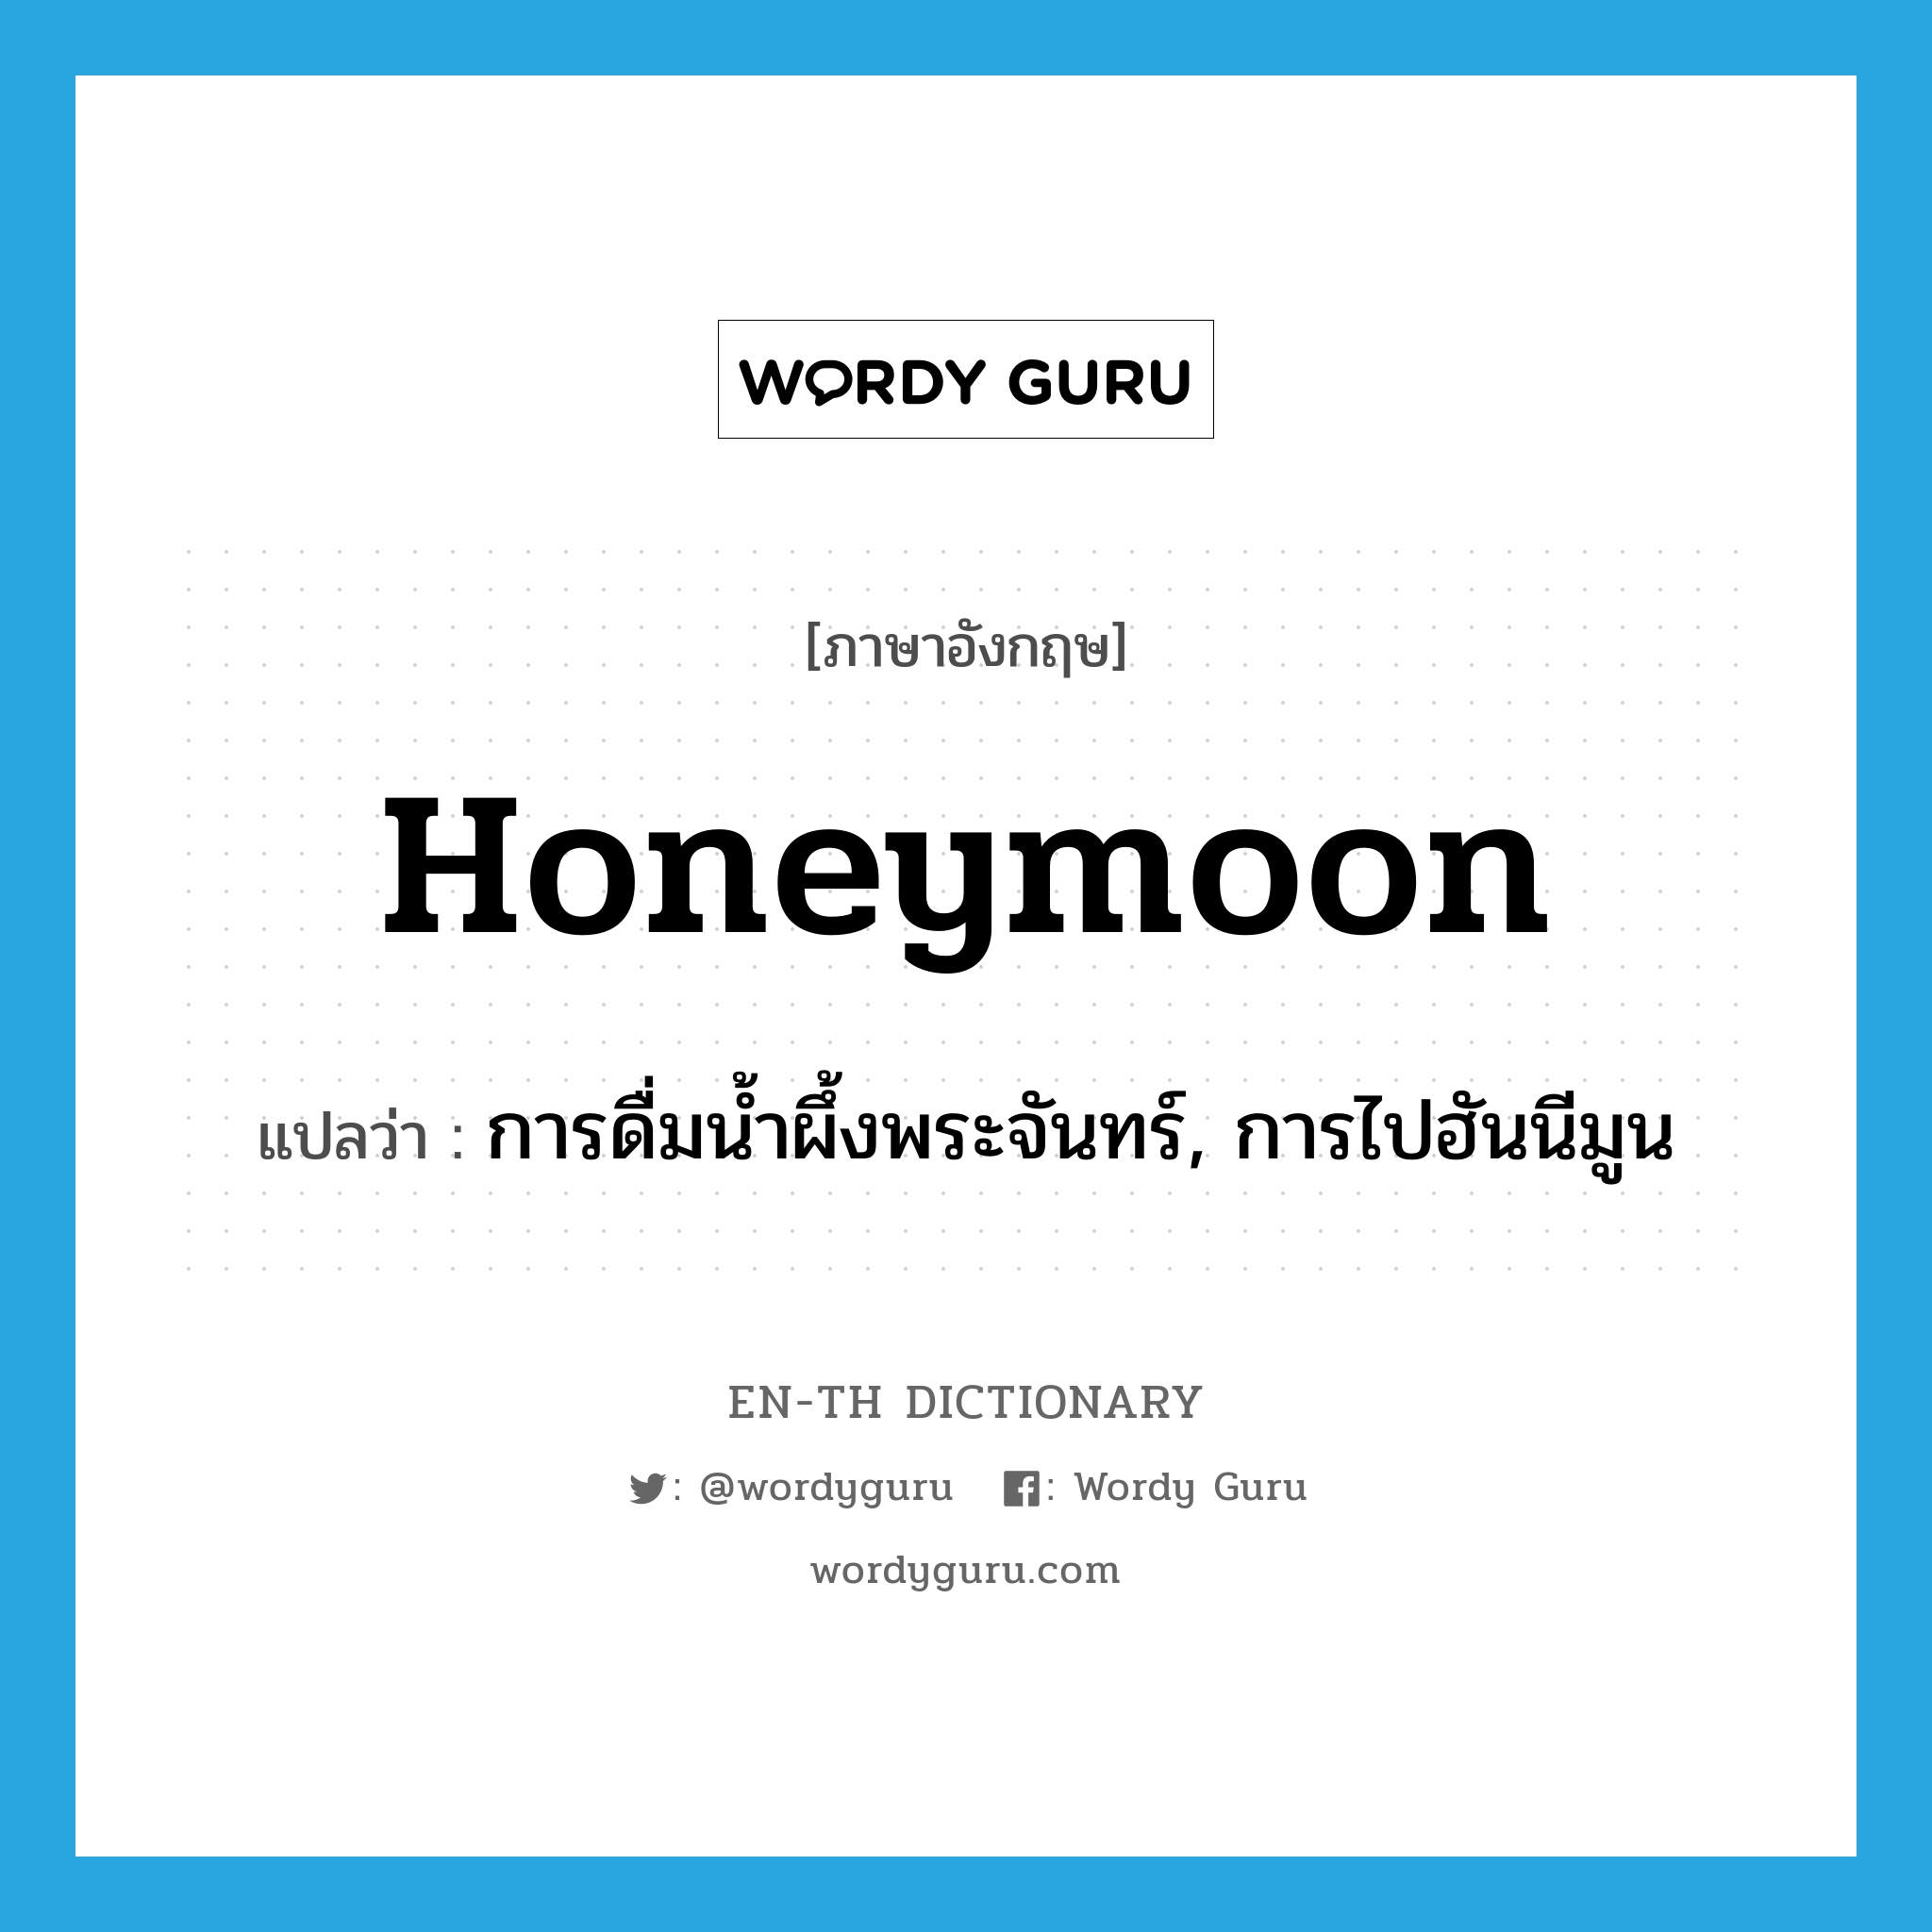 การดื่มน้ำผึ้งพระจันทร์, การไปฮันนีมูน ภาษาอังกฤษ?, คำศัพท์ภาษาอังกฤษ การดื่มน้ำผึ้งพระจันทร์, การไปฮันนีมูน แปลว่า honeymoon ประเภท N หมวด N